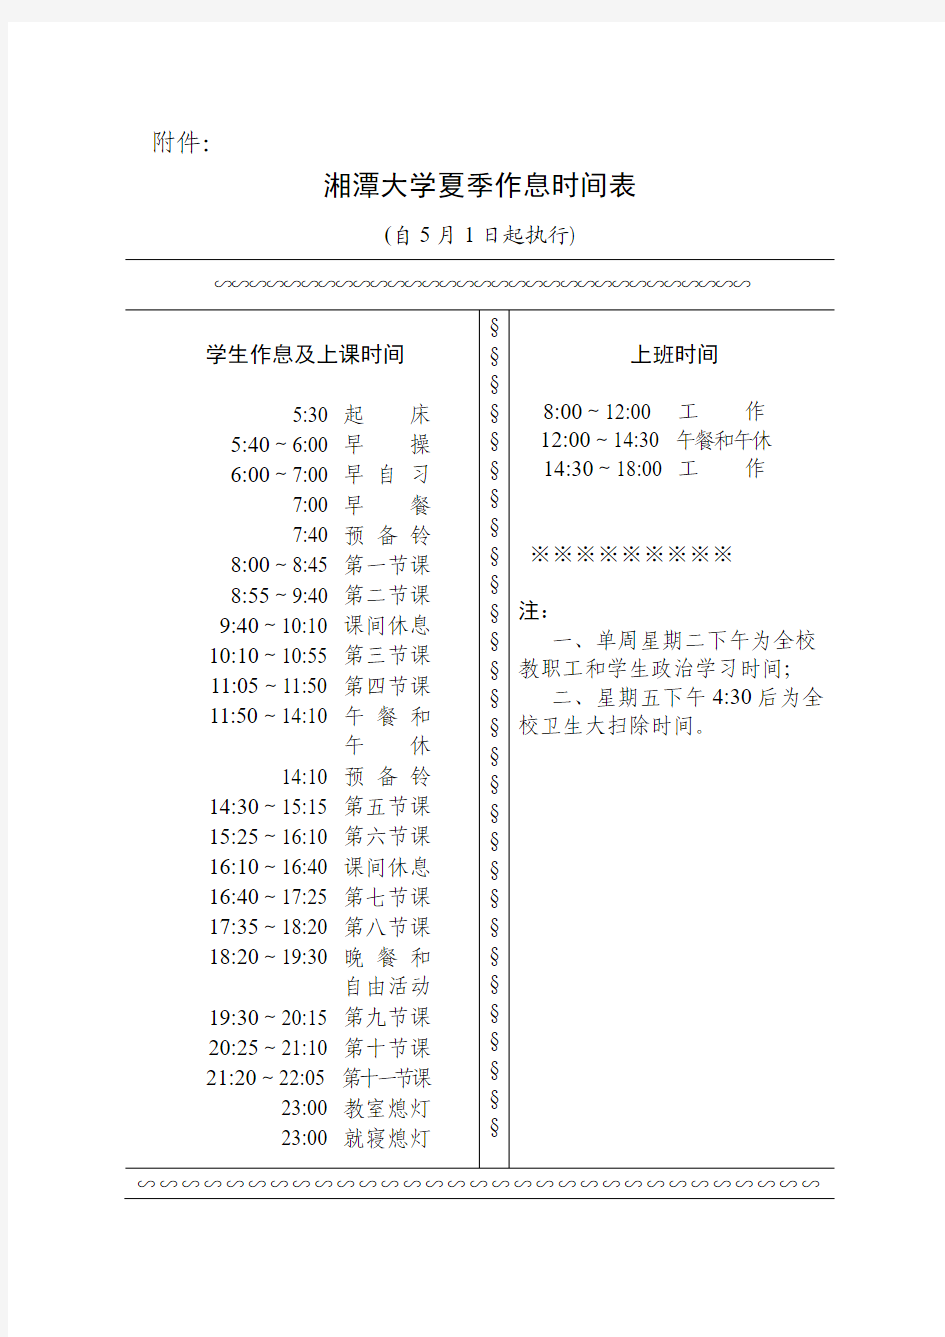 湘潭大学夏季作息时间表